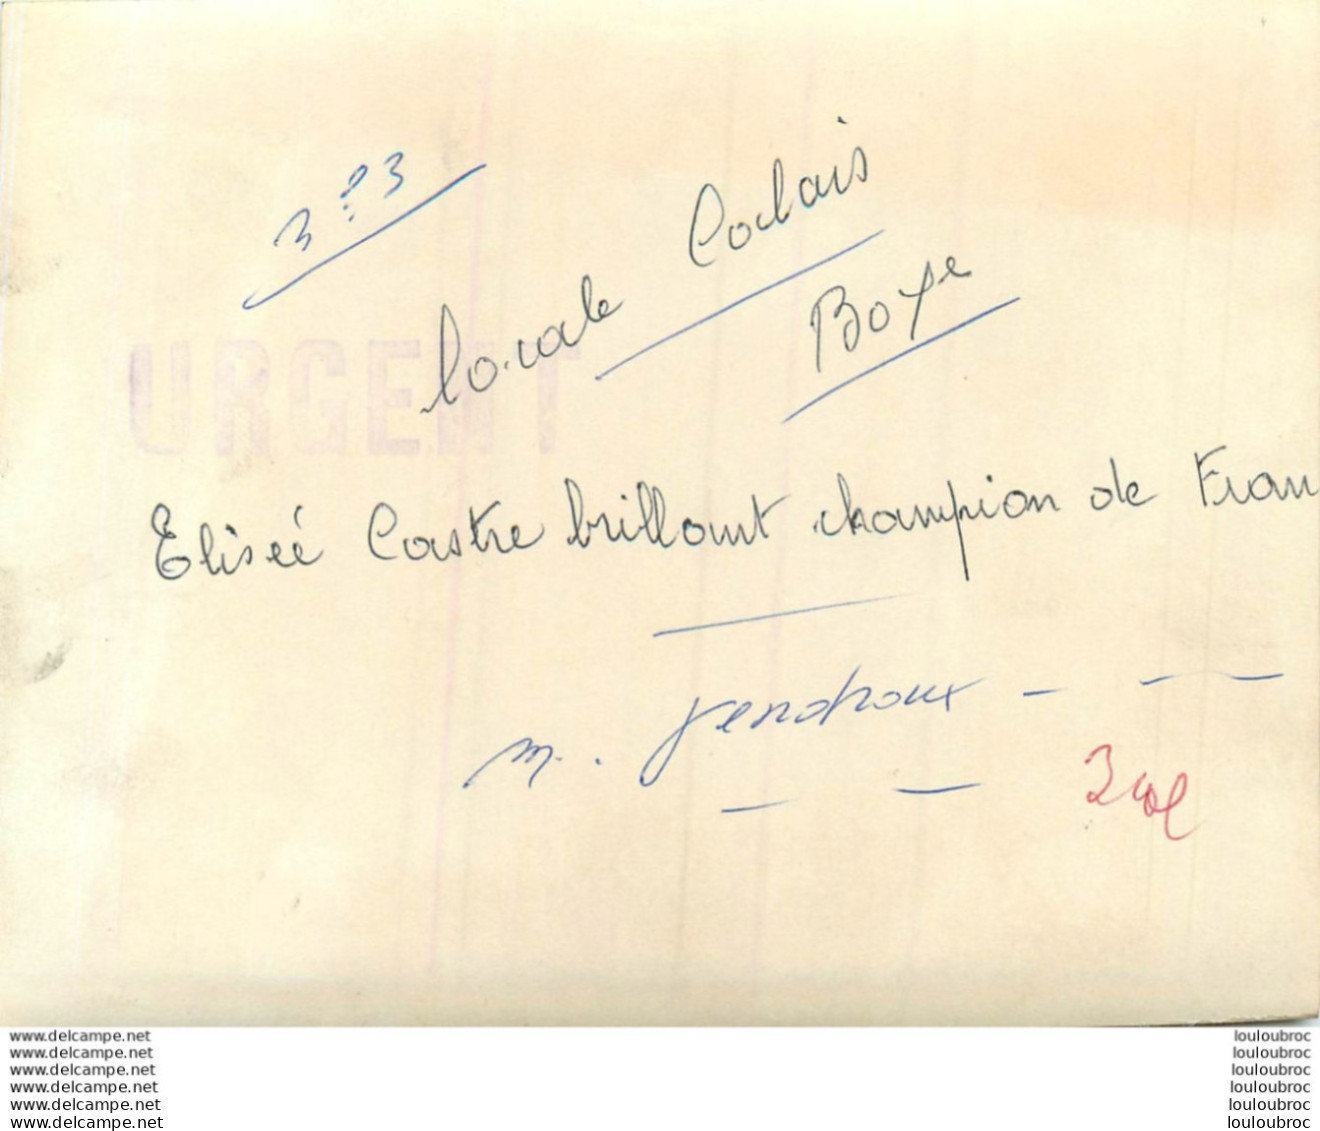 BOXE 1960 ELISEE CASTRE CHAMPION DE FRANCE DES MOUCHES PHOTO DE PRESSE 15 X 10 CM R1 - Sport